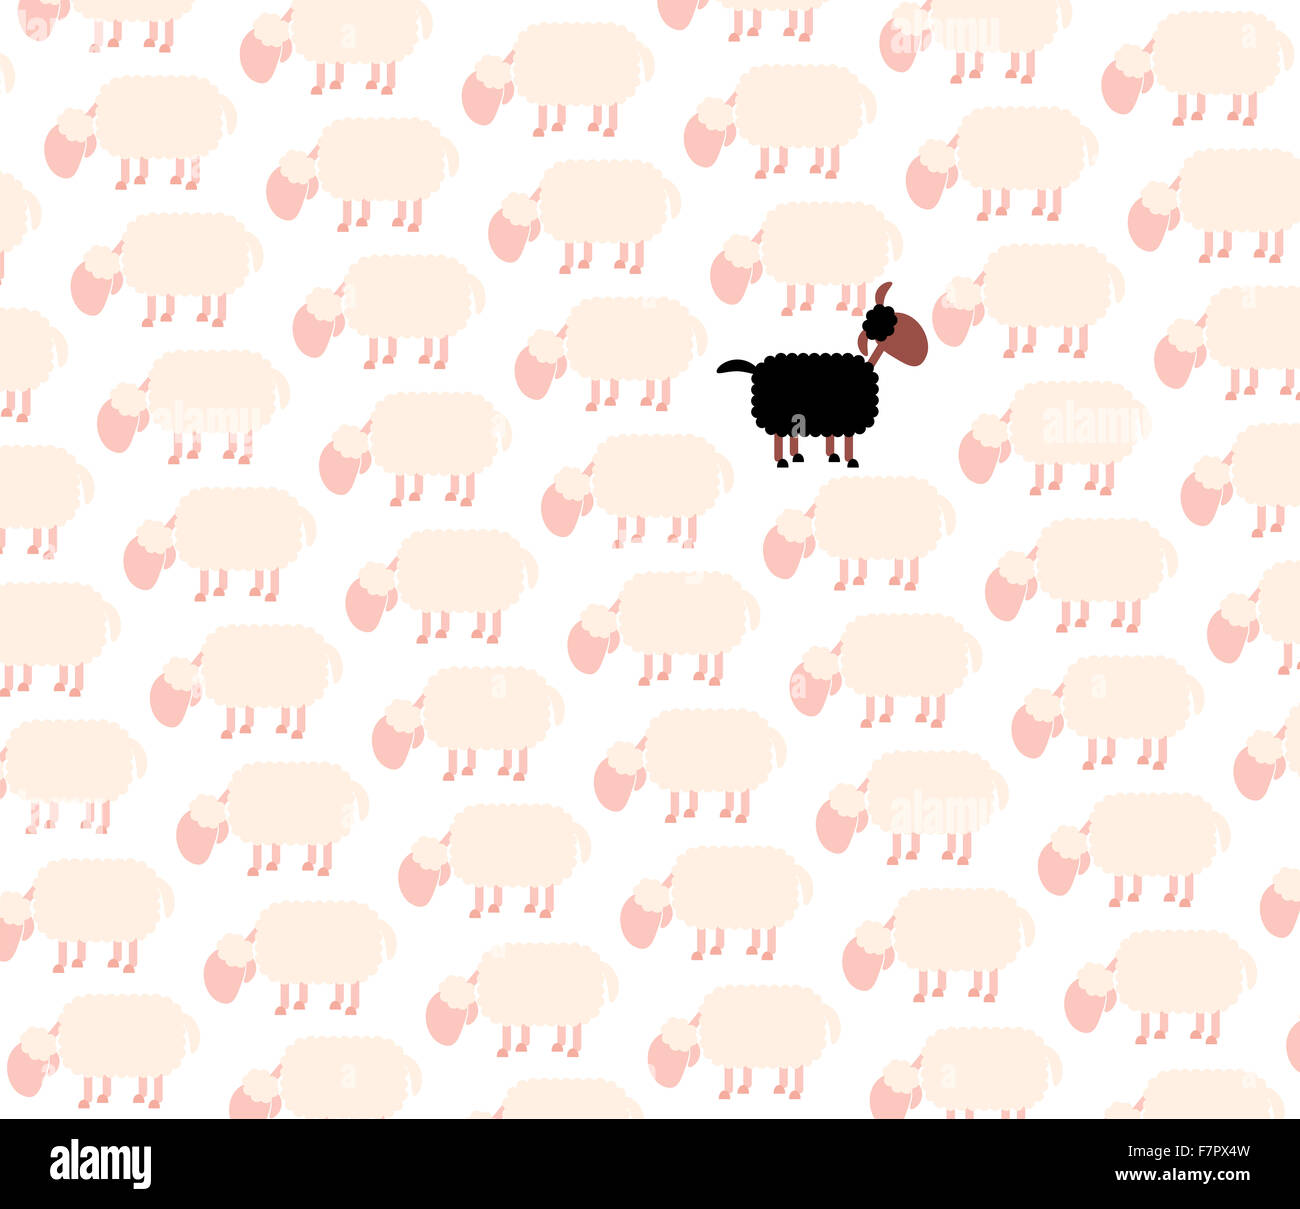 Black sheep among white sheep flock. Illustration on white background. Stock Photo